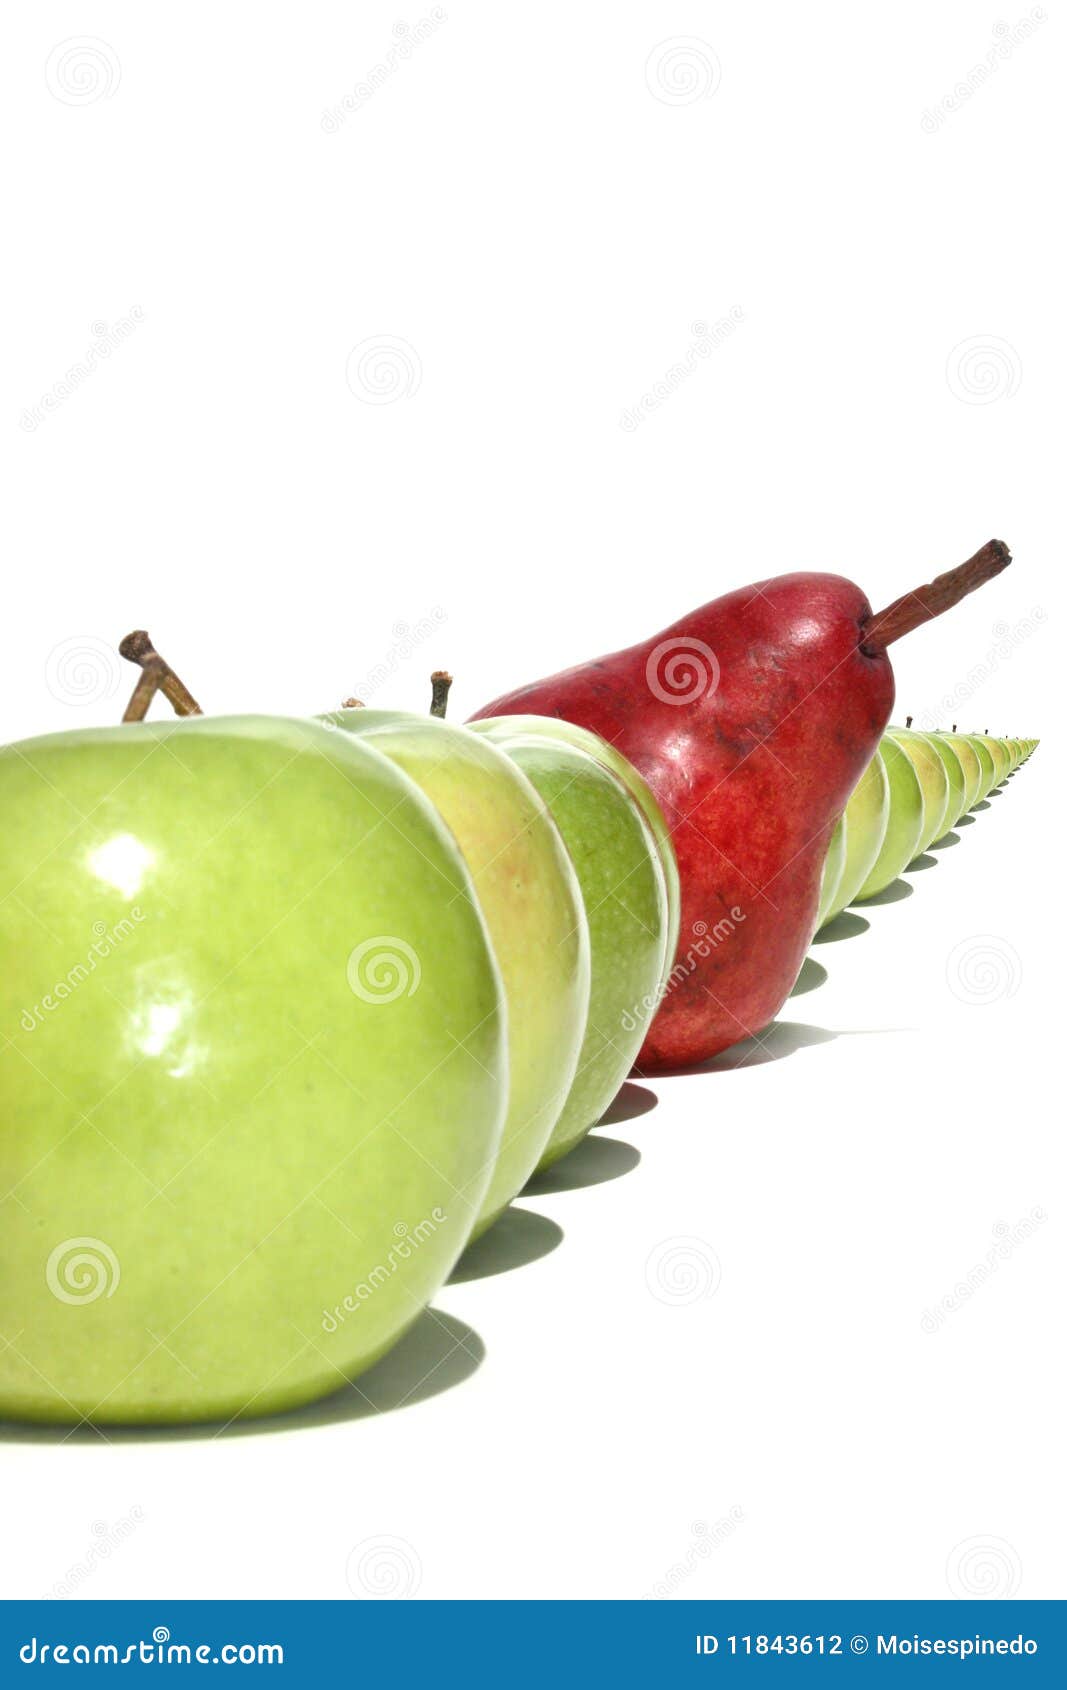 impatient pear